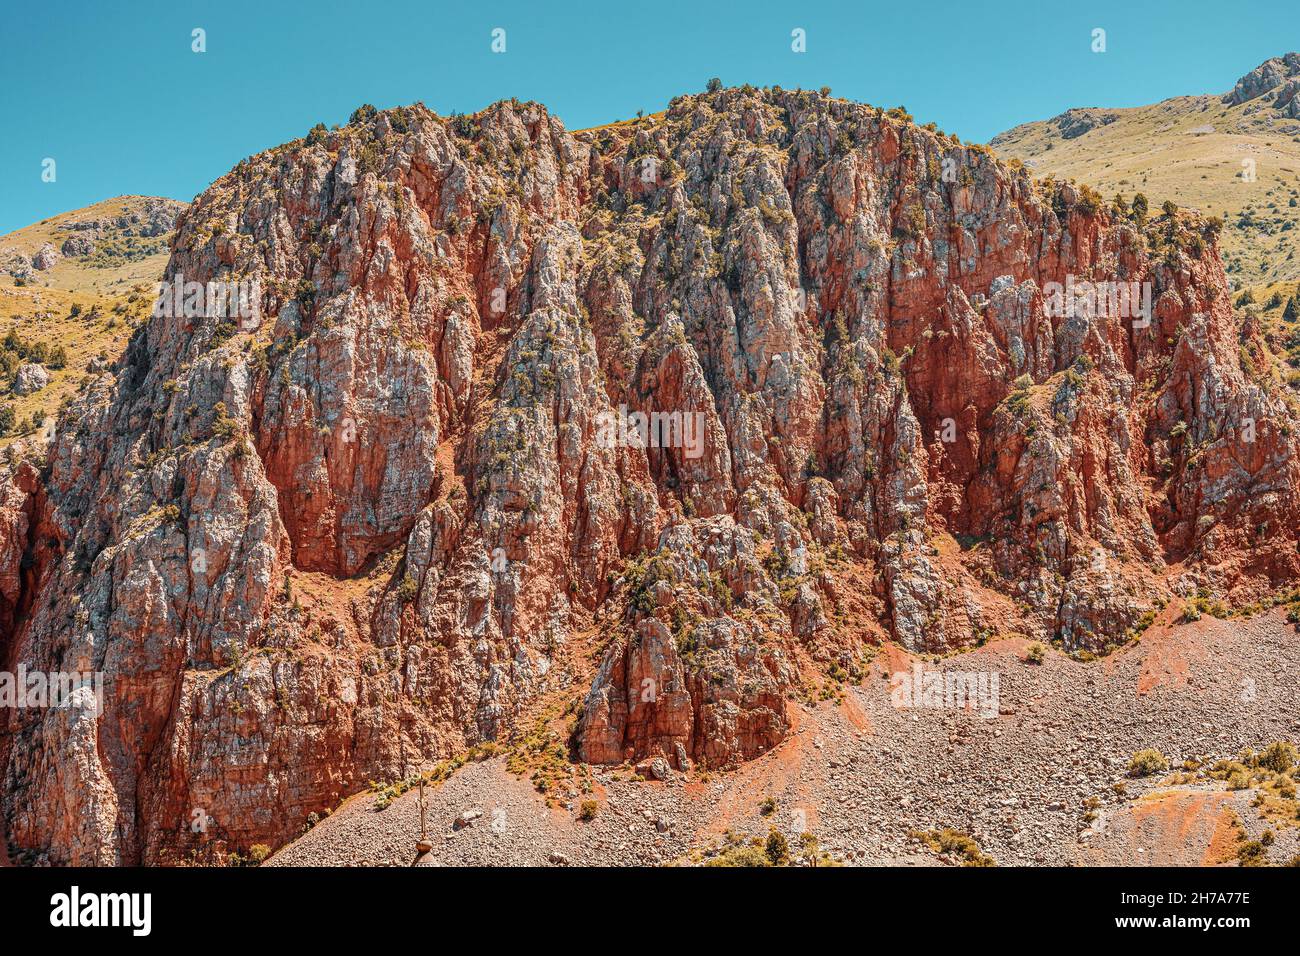 Las famosas rocas rojas cerca del monasterio de Noravank en Armenia con un alto contenido de hierro que determina este color Foto de stock